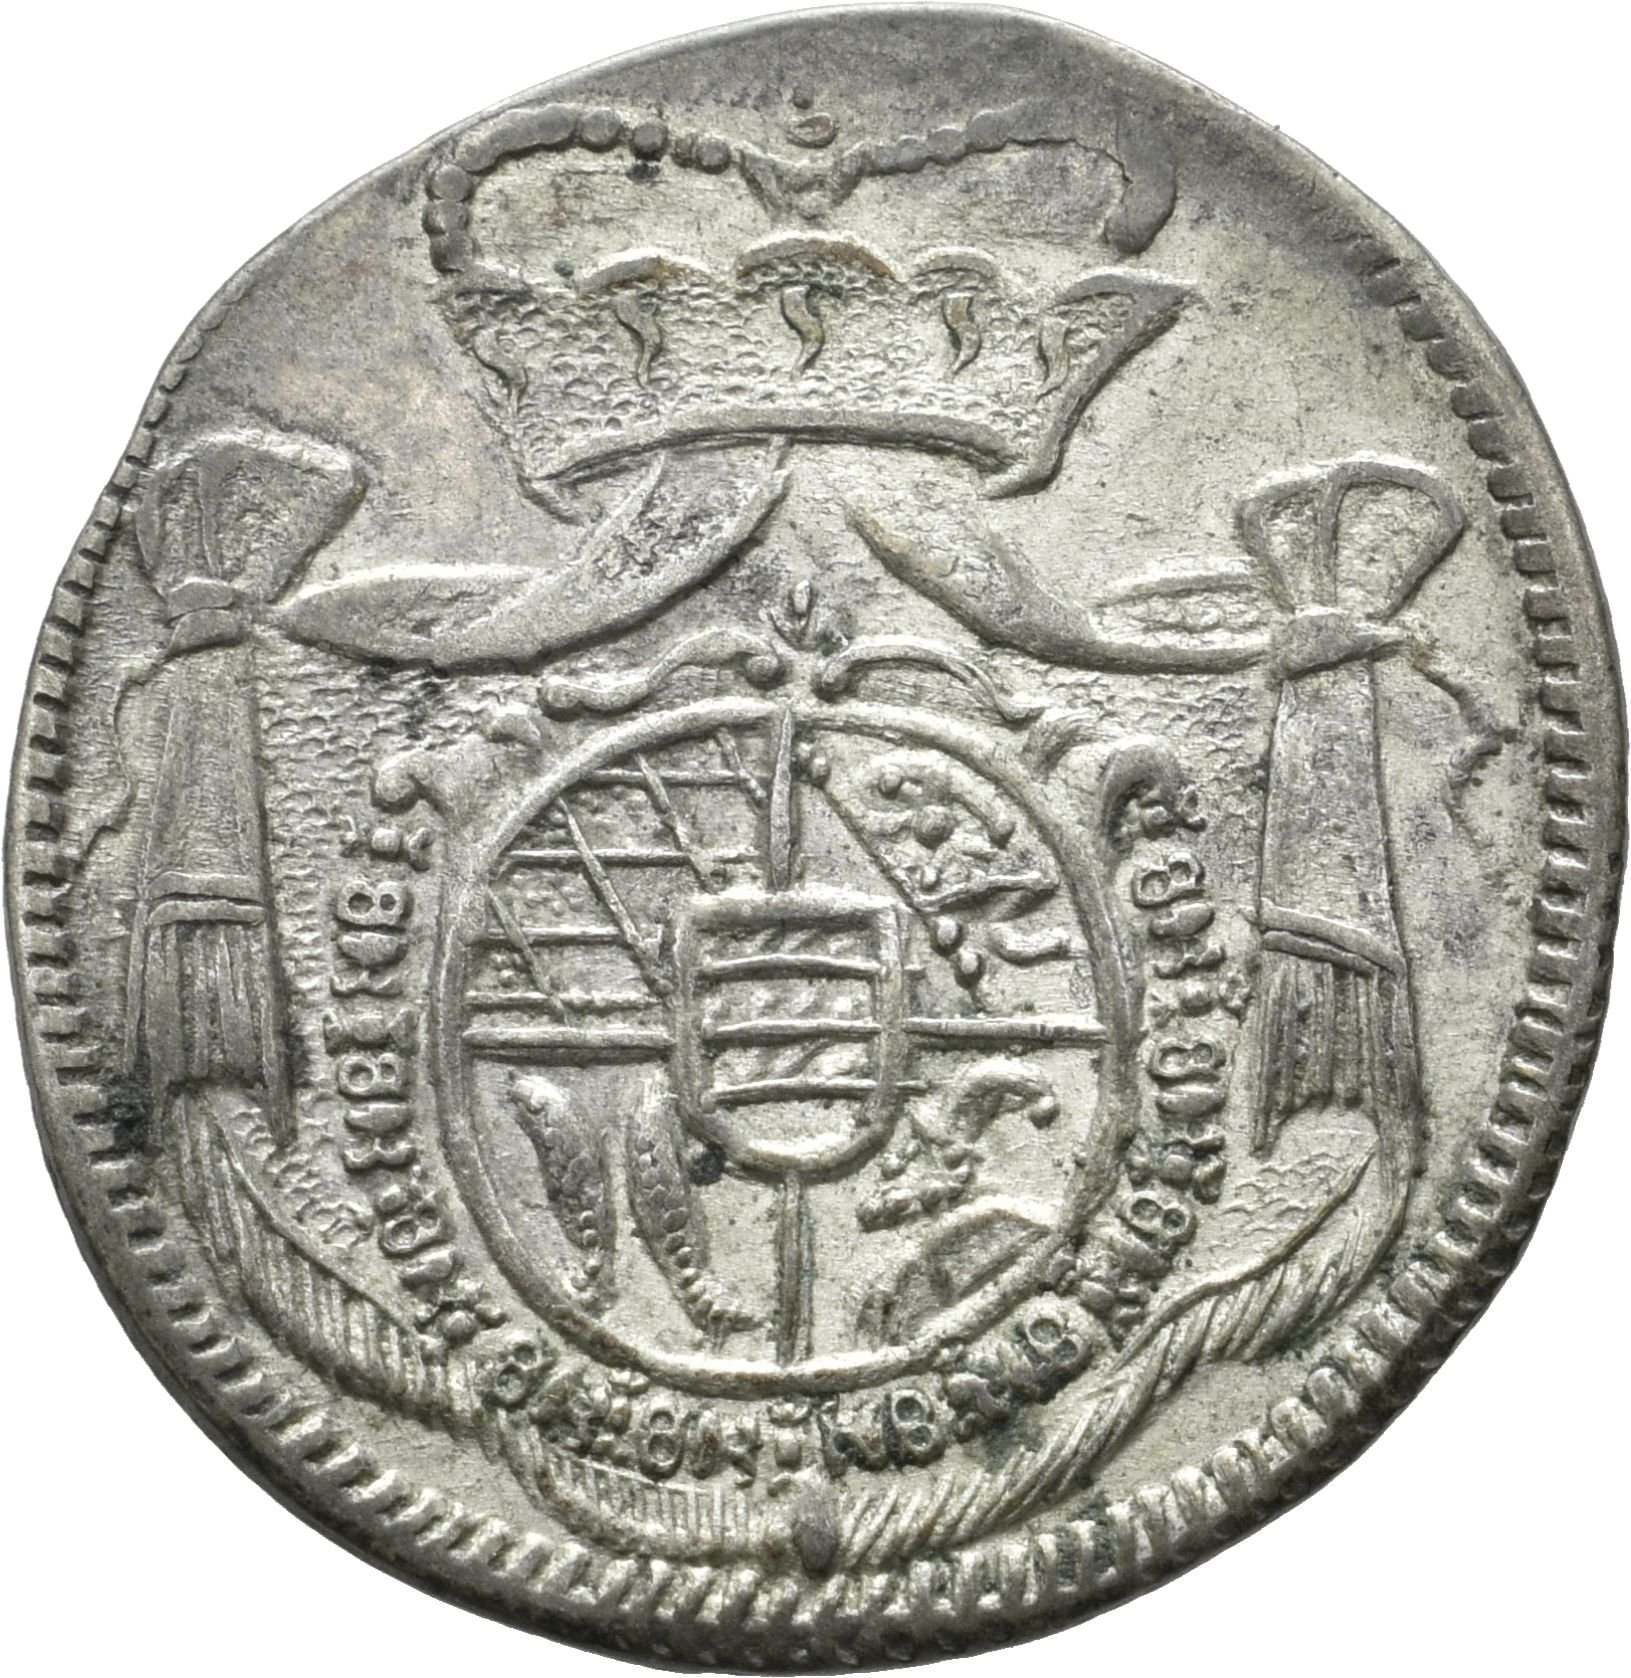 Württembergische Landmünze unter Herzog Karl Alexander von Württemberg von 1736 (Münzsammlung des Sparkassenverbands Baden-Württemberg CC BY-NC-SA)